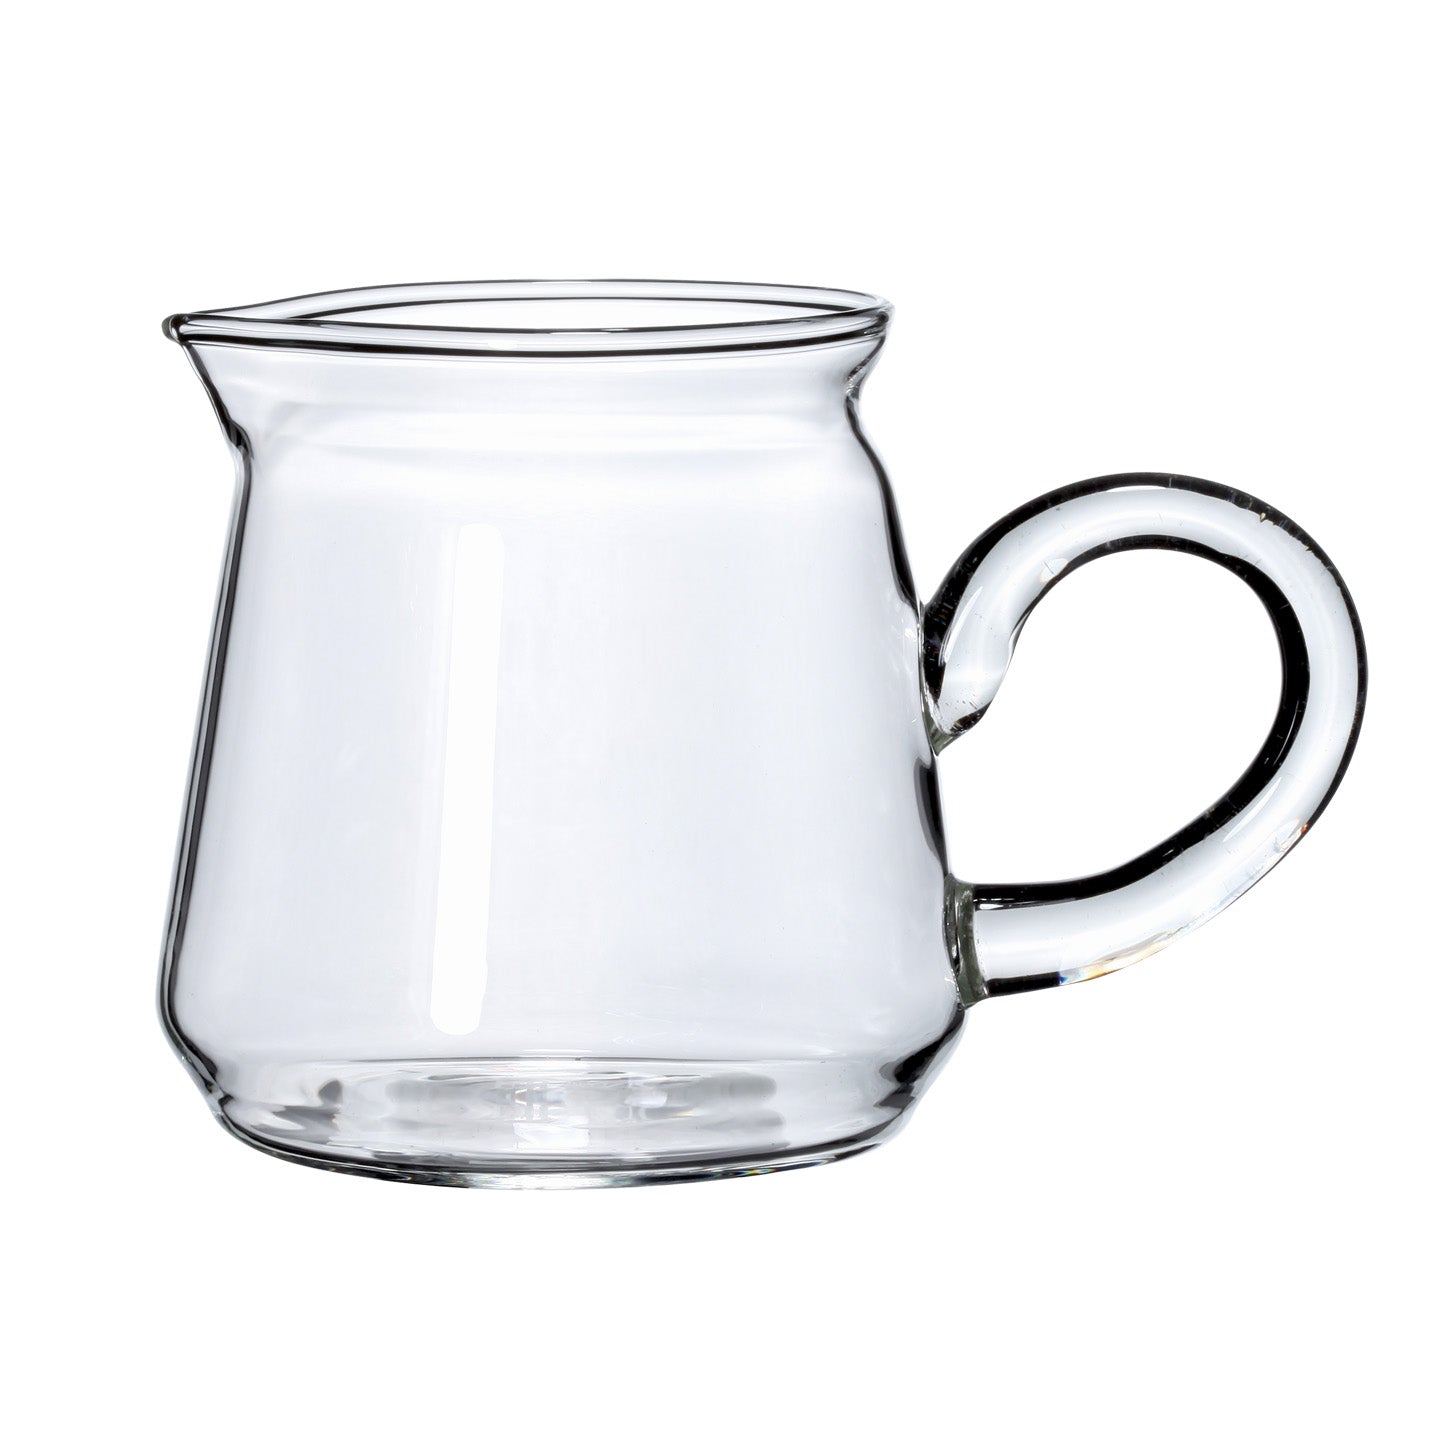 https://www.eilong.com/cdn/shop/products/glass-tea-pitcher-classical-pitcher-13oz-1.jpg?v=1652074262